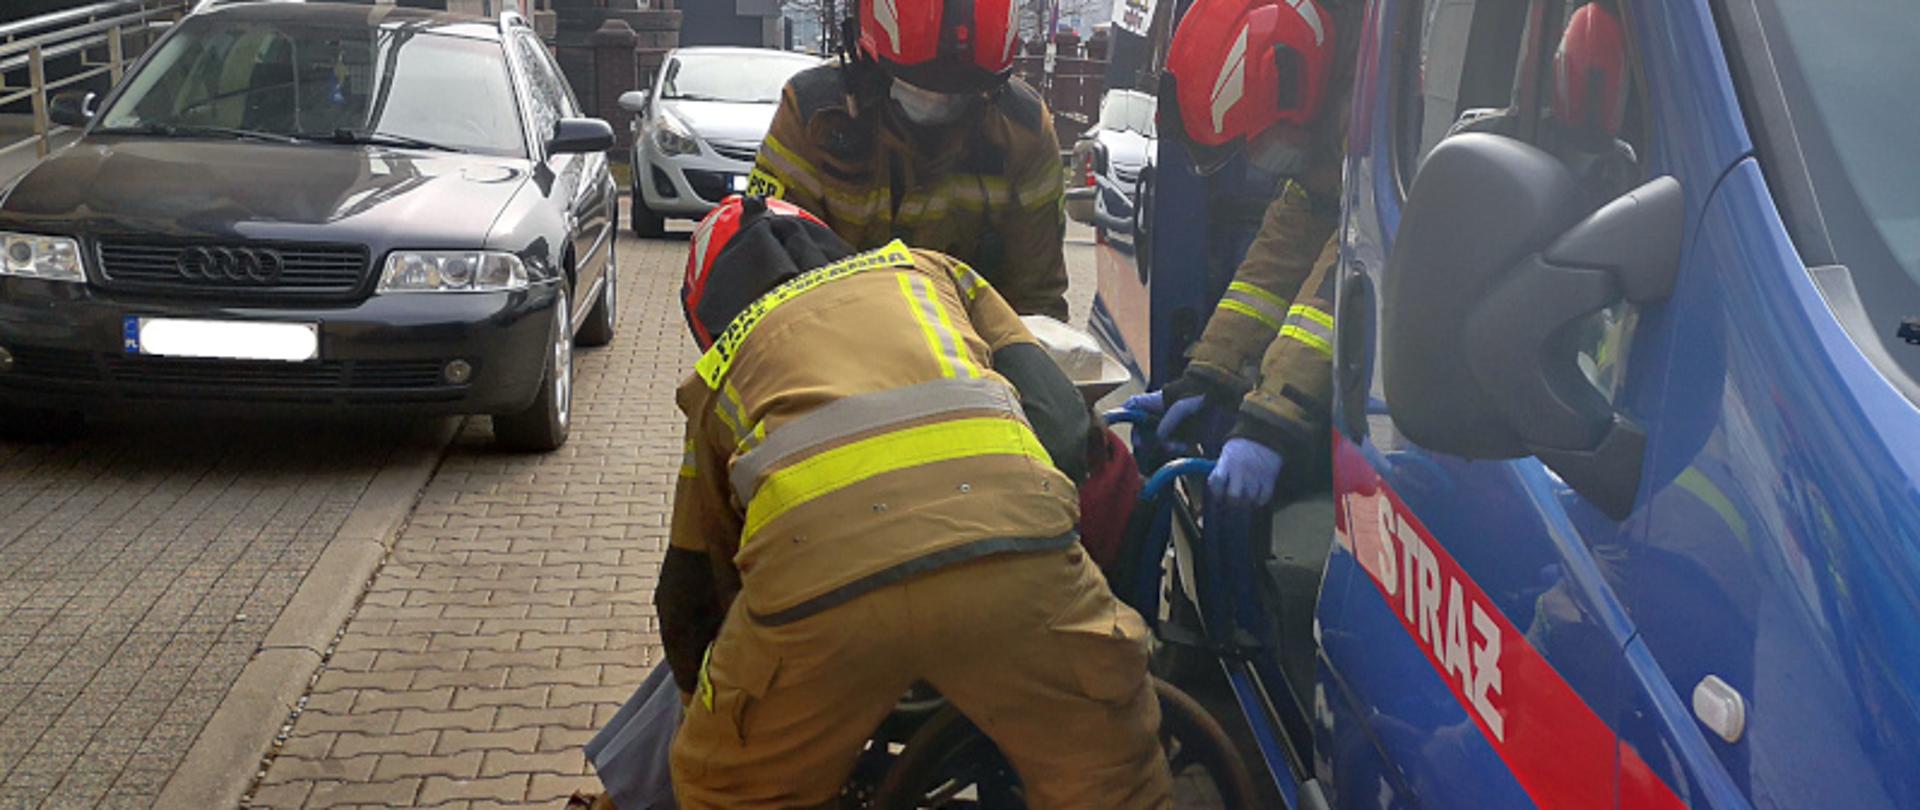 Strażacy pomagający osobie poruszającej się na wózku inwalidzkim wysiąść z samochodu, pod budynkiem poradni lekarskiej